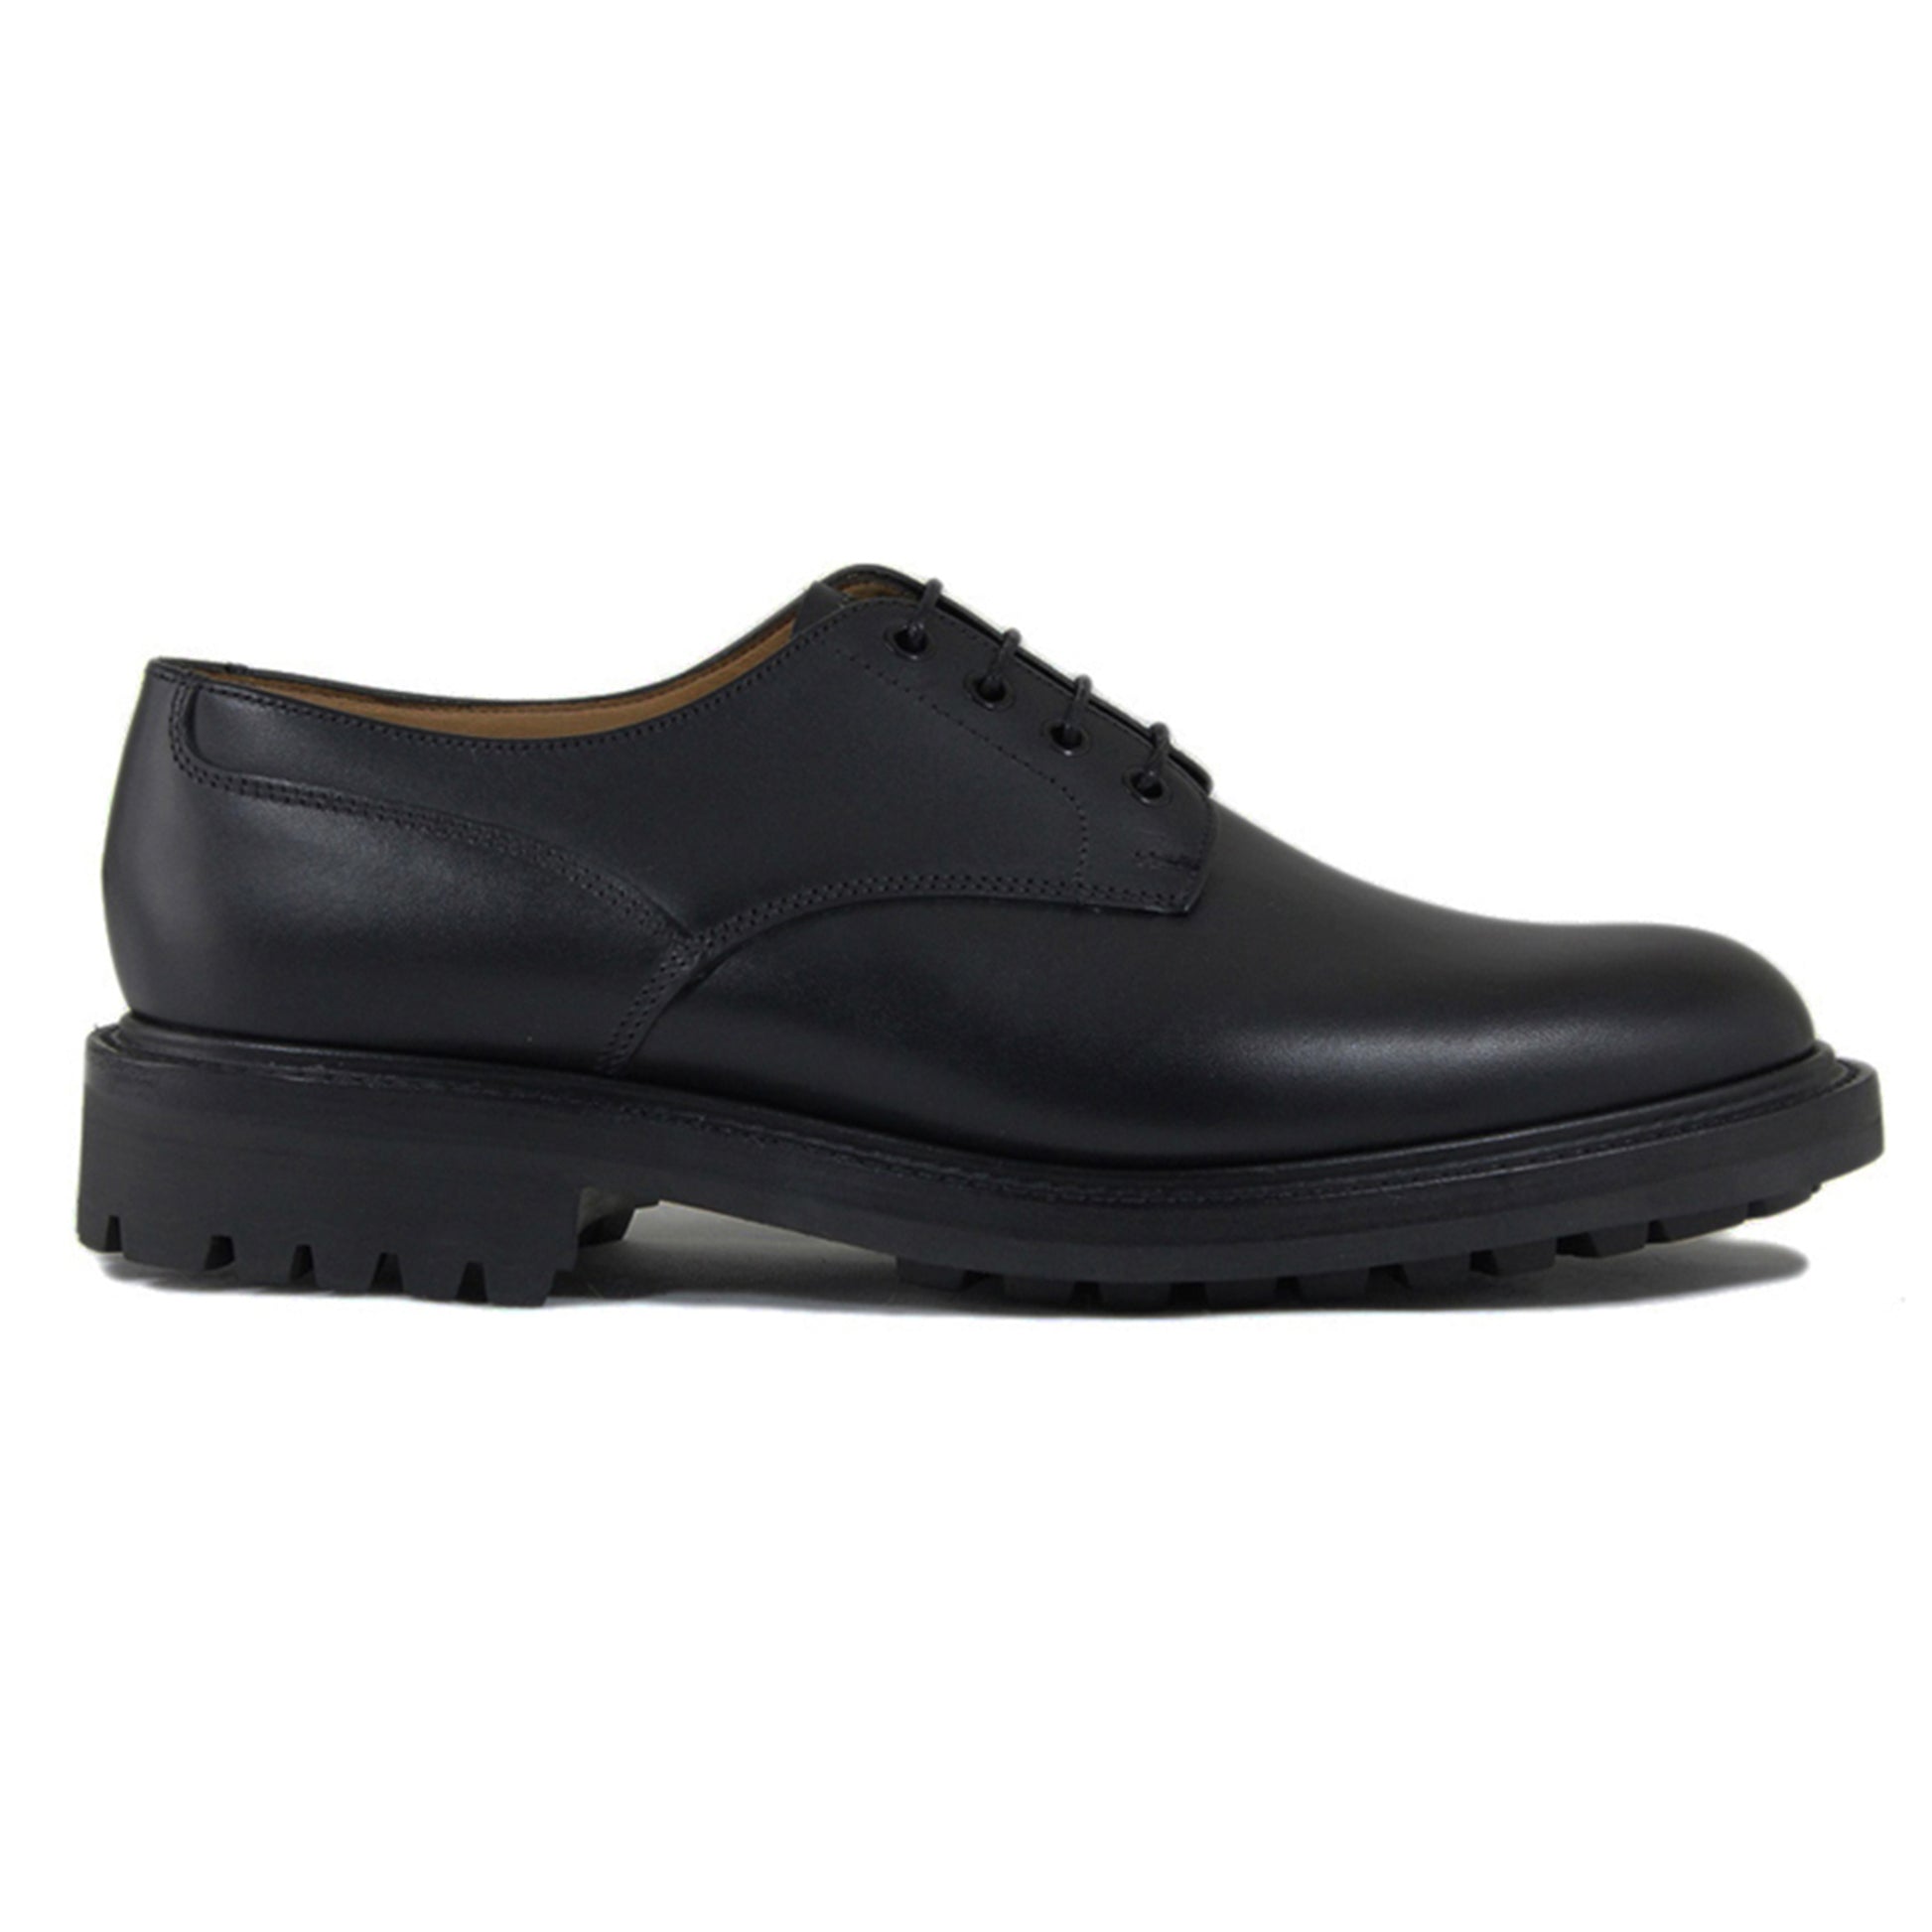 Sanders Worcester Gibson Derby Shoe Leather Footwear in Black Side